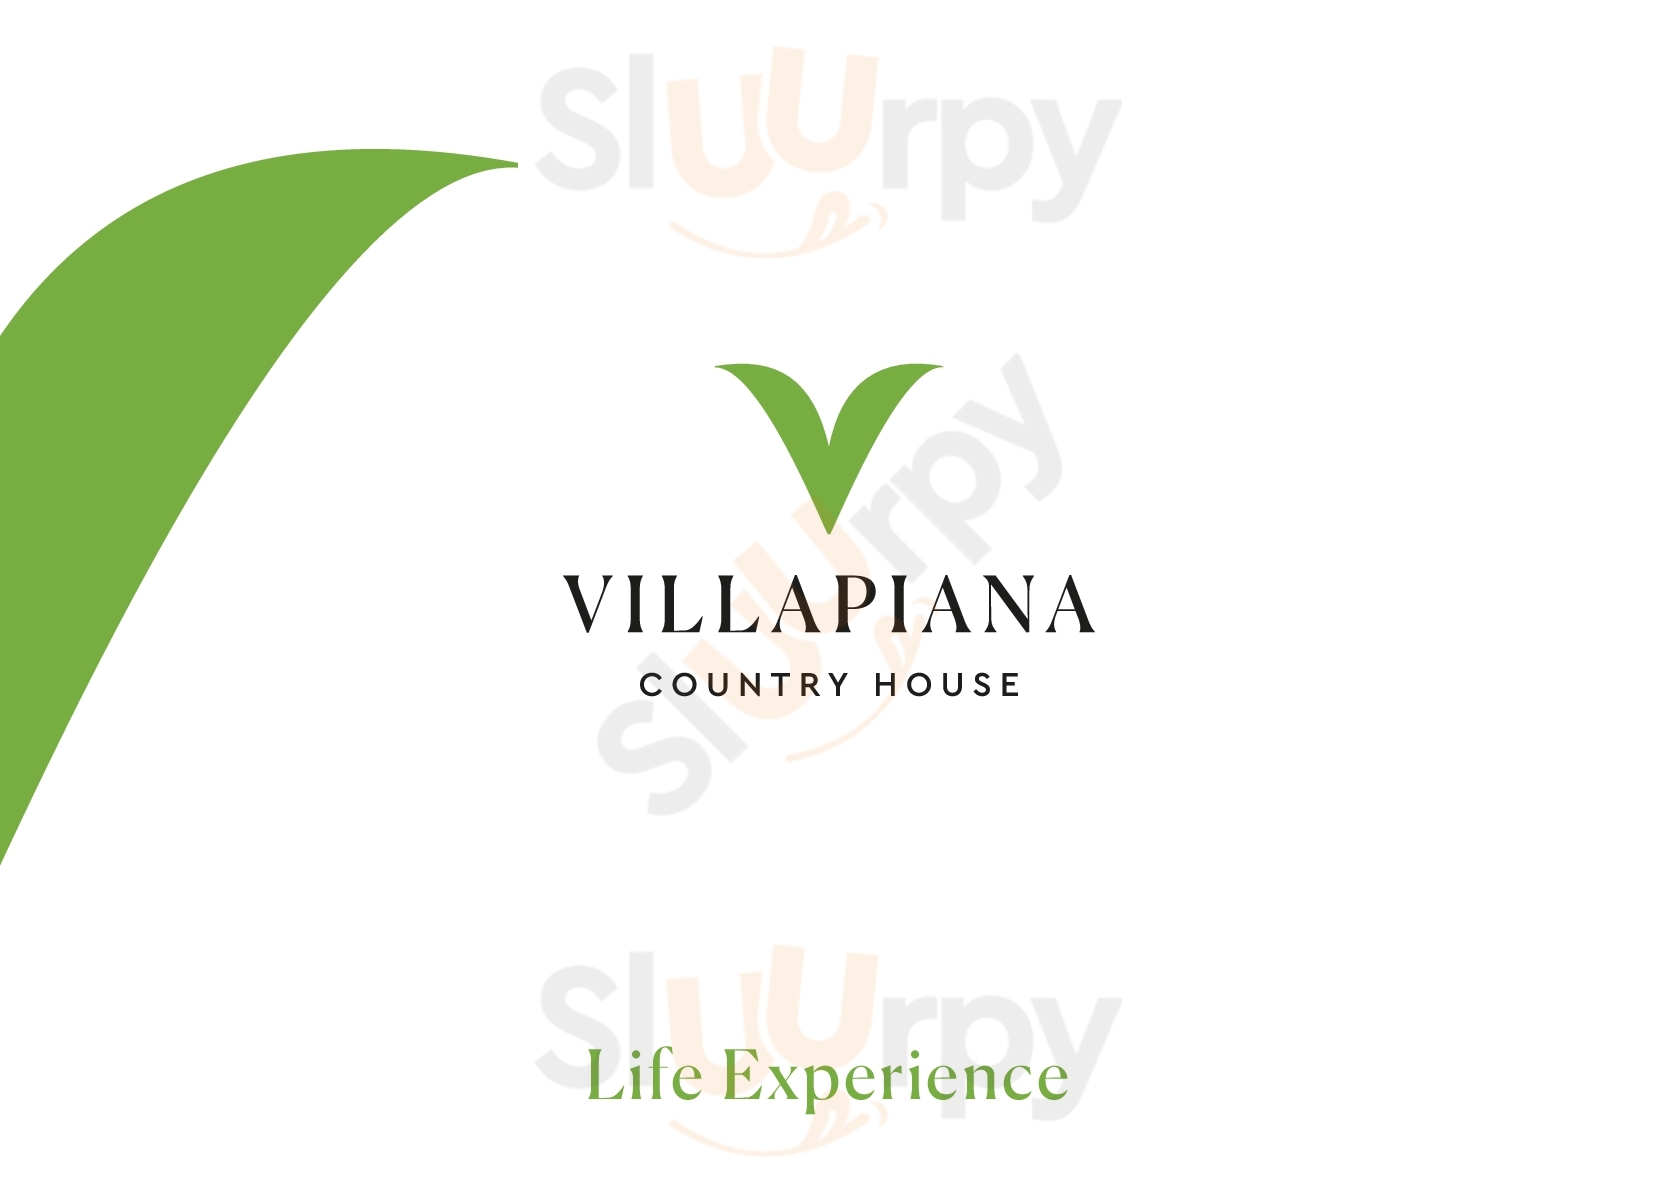 Villapiana Country House Pellezzano menù 1 pagina